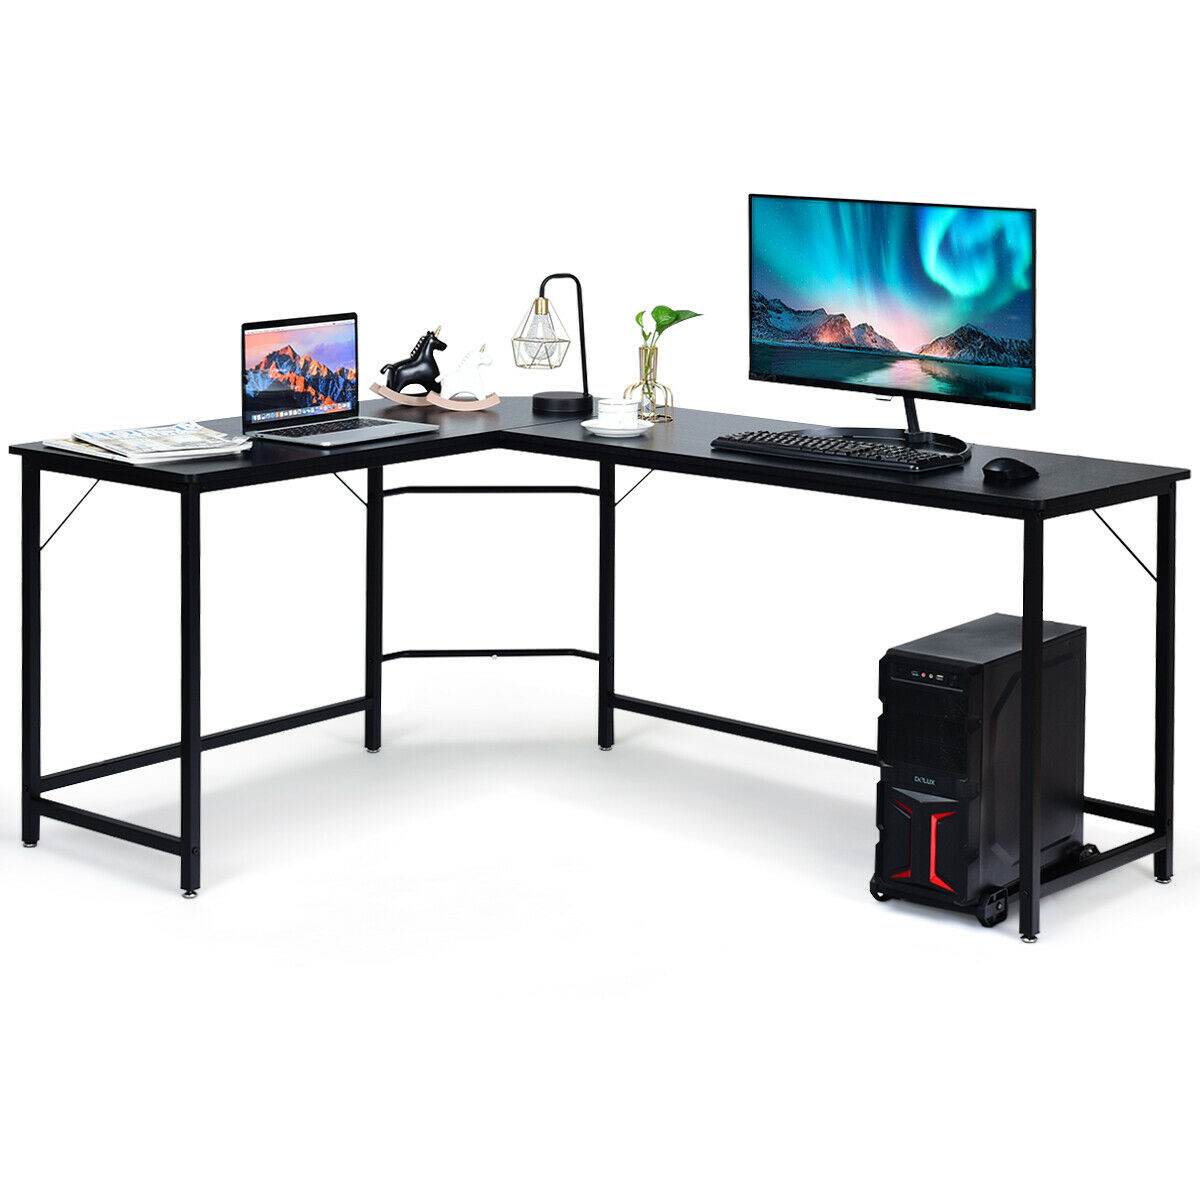 L Shaped Desk Corner Computer Desk PC Laptop Gaming Table Workstation Black/Natural/Brown - Black